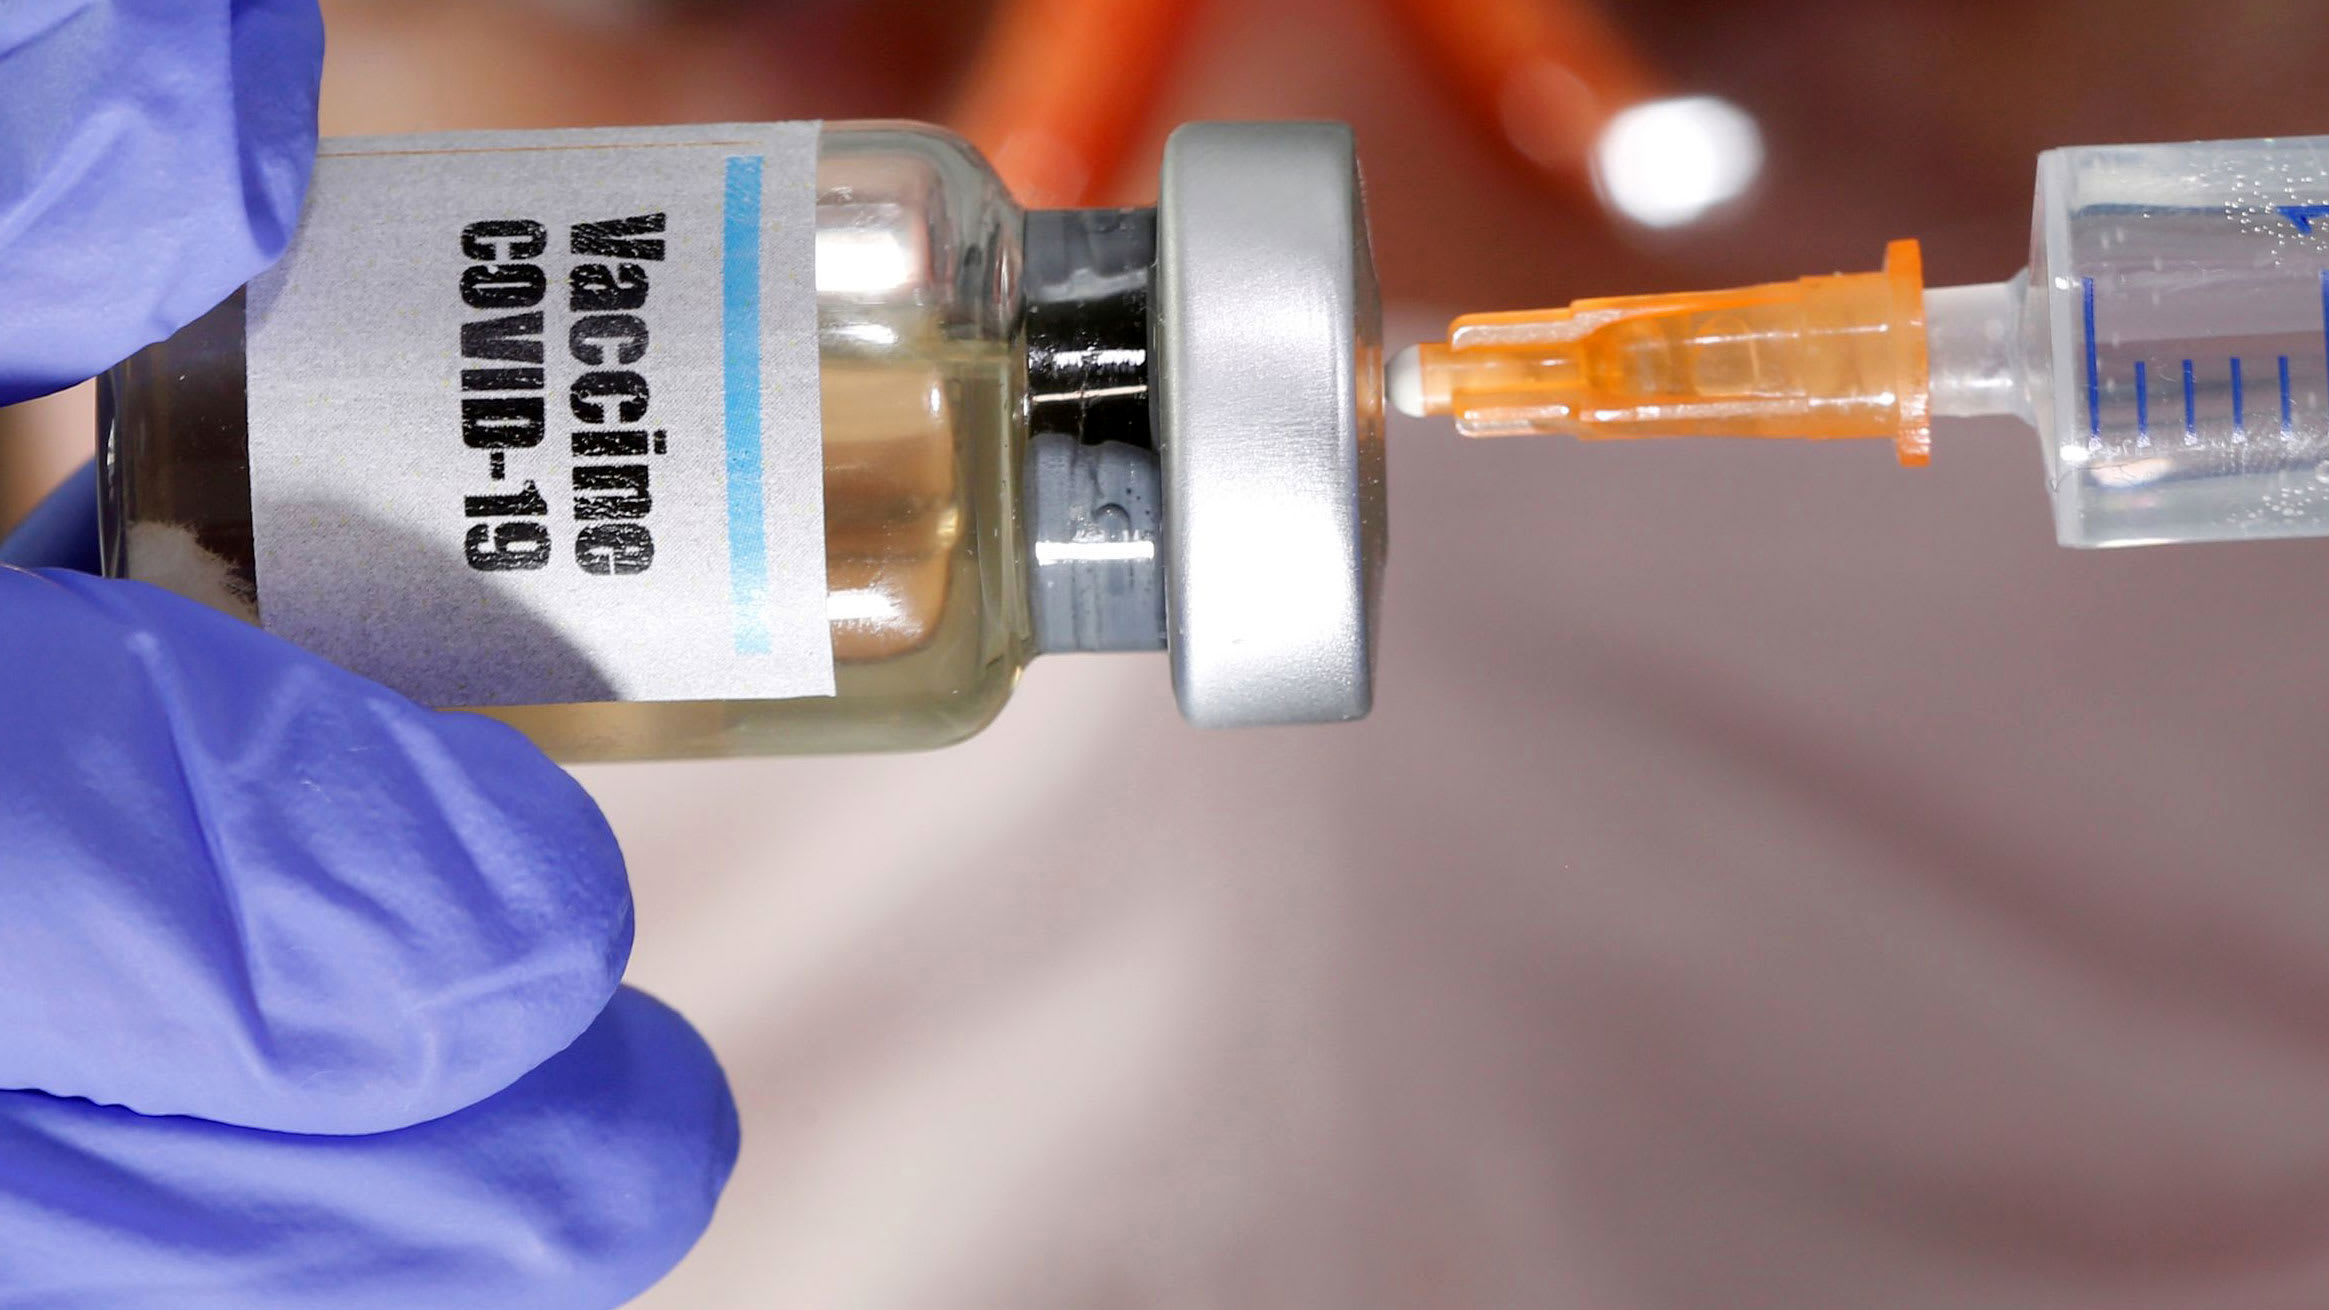  واکسن کرونای روس‌ها کی به تولید انبوه می رسد؟